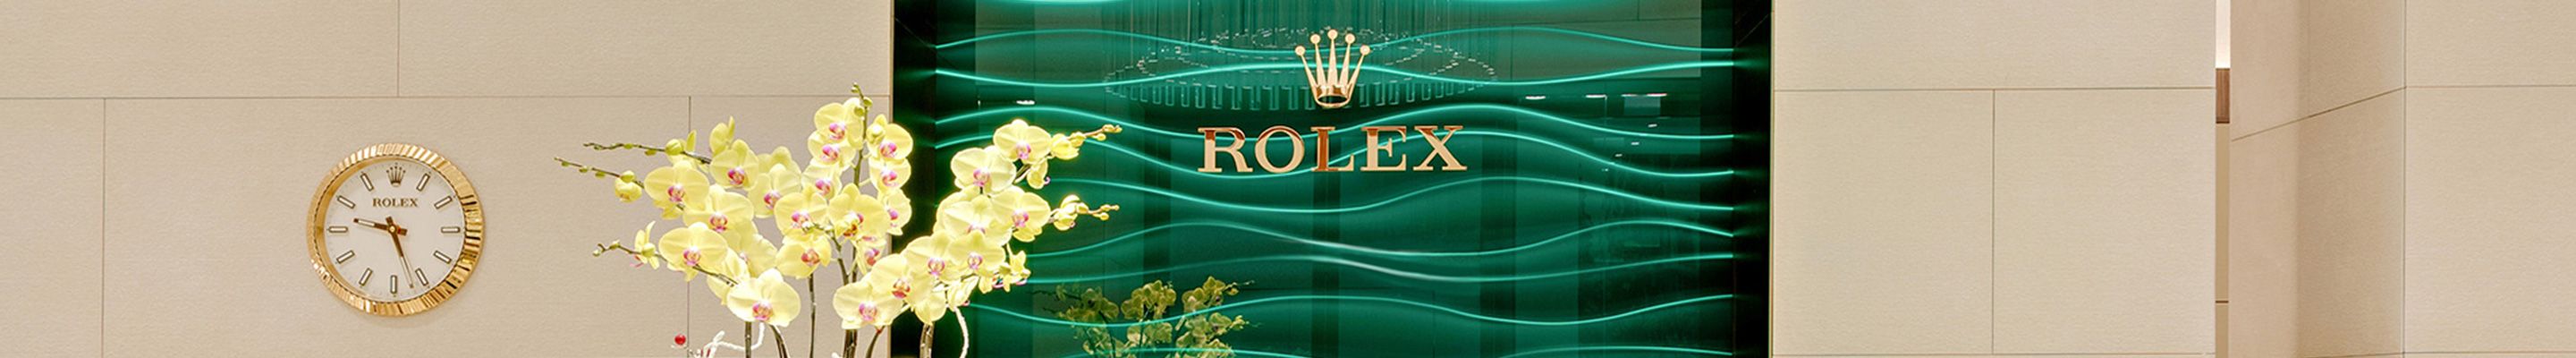 Rolex Showroom bei Juwelier Hermann Schmidt